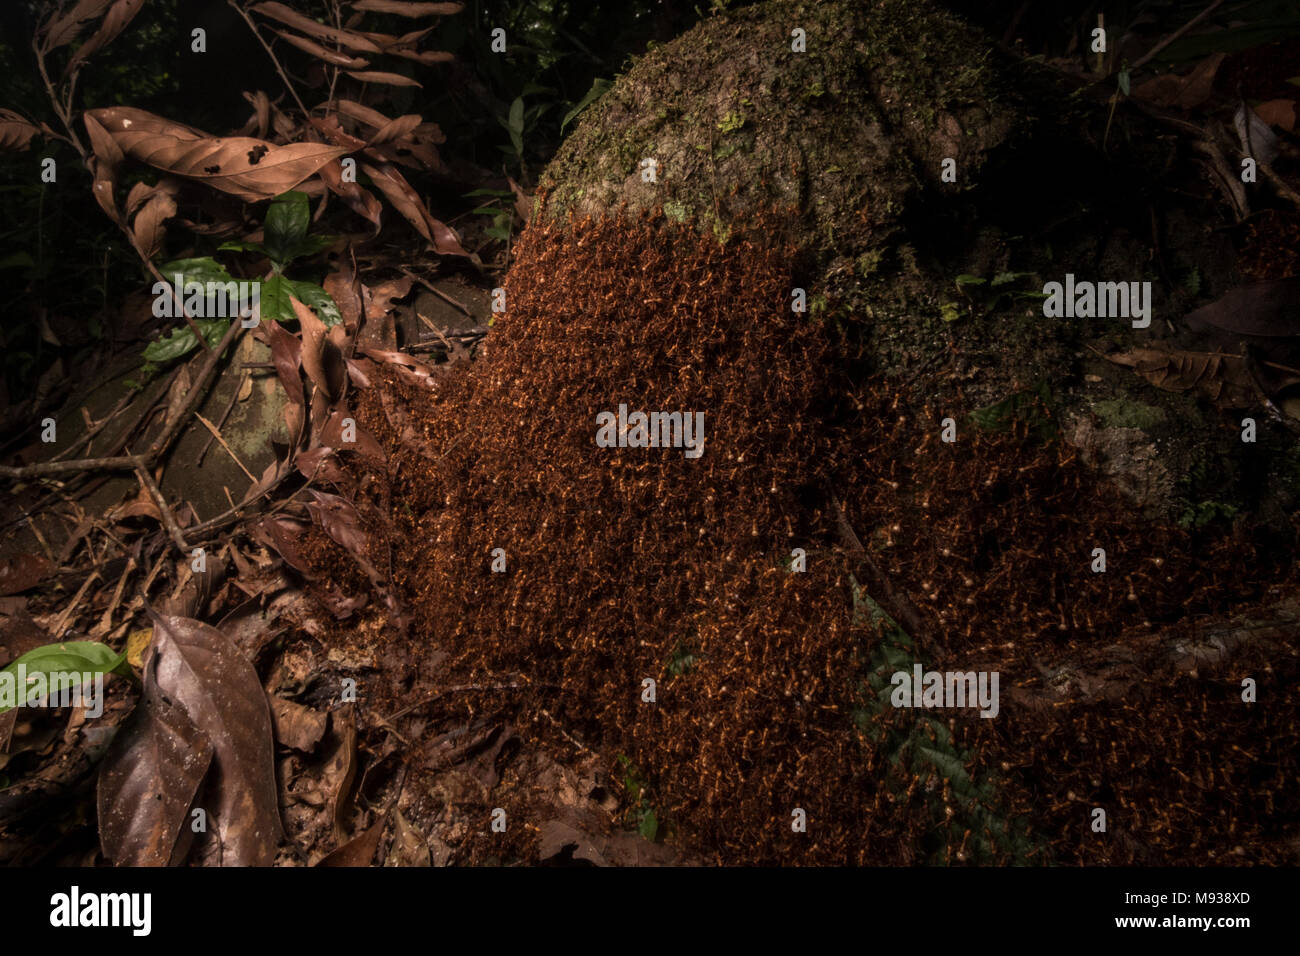 Eine wimmelnde Horde von wanderameisen nutzt ihren eigenen Körper, ihre temporäre Haus zu konstruieren, Dieses mobile Ant's Nest ist ein biwak für wanderameisen Stockfoto